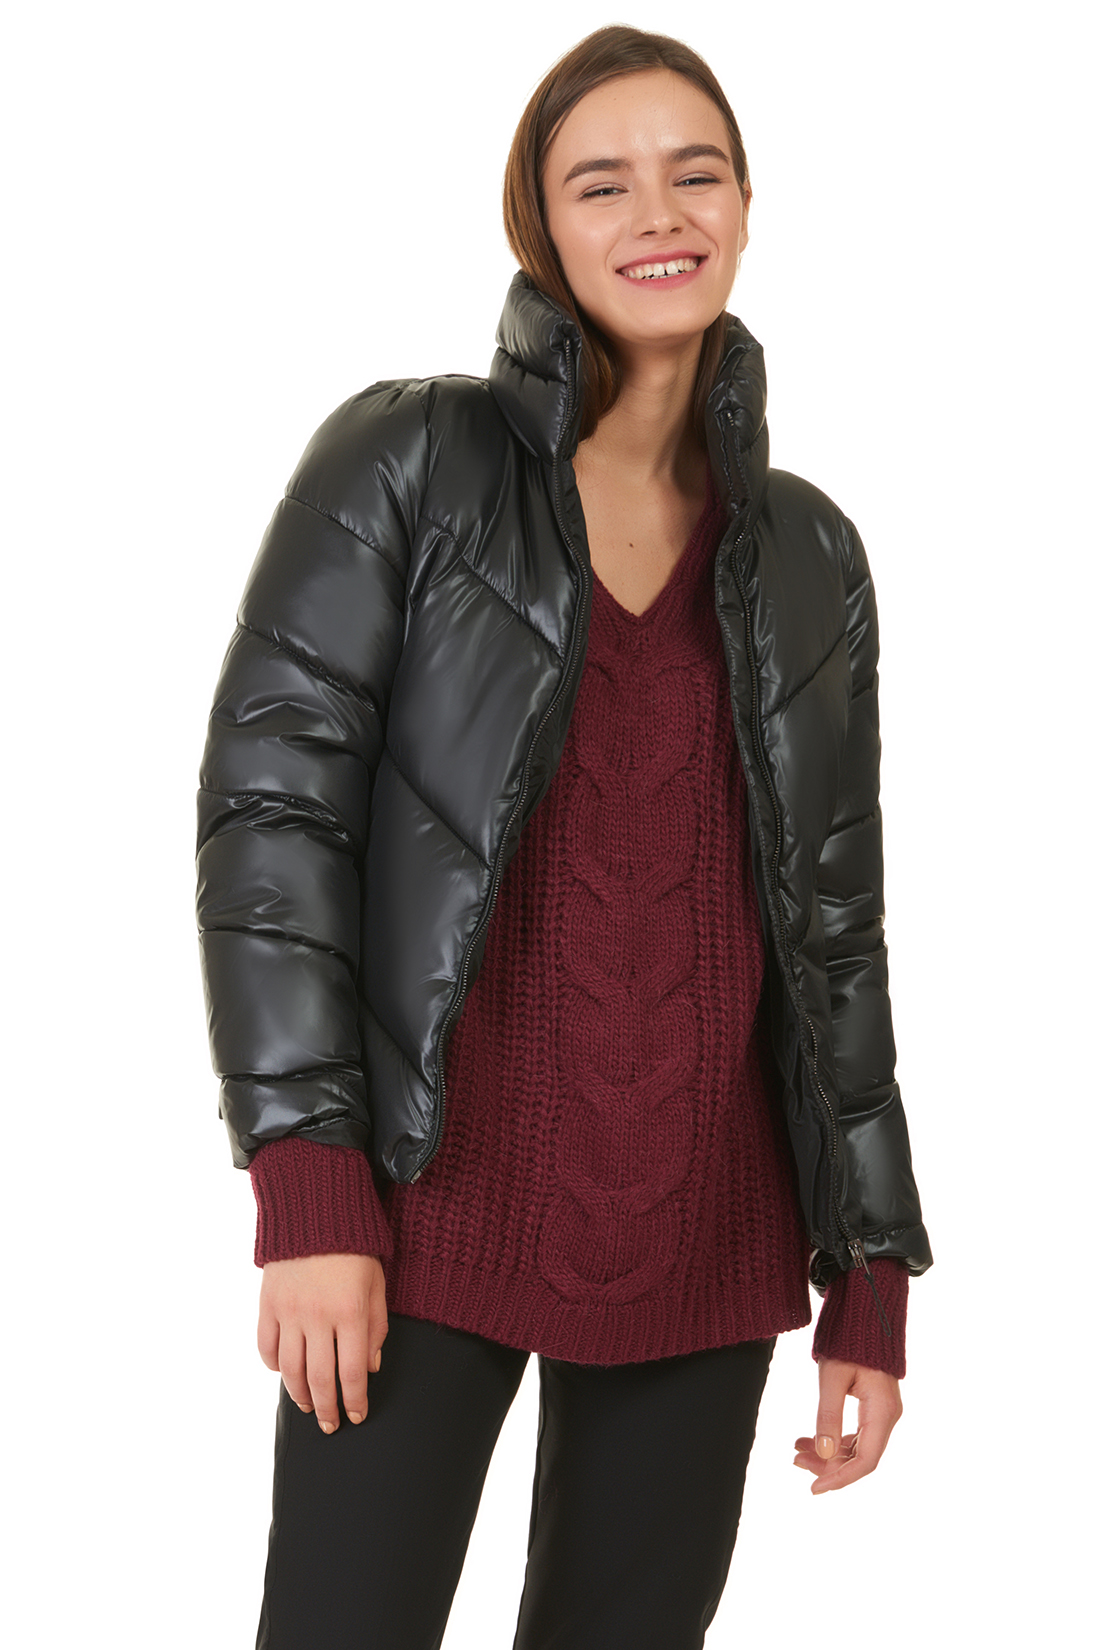 Укороченная дутая куртка (арт. baon B037565), размер S, цвет черный Укороченная дутая куртка (арт. baon B037565) - фото 1